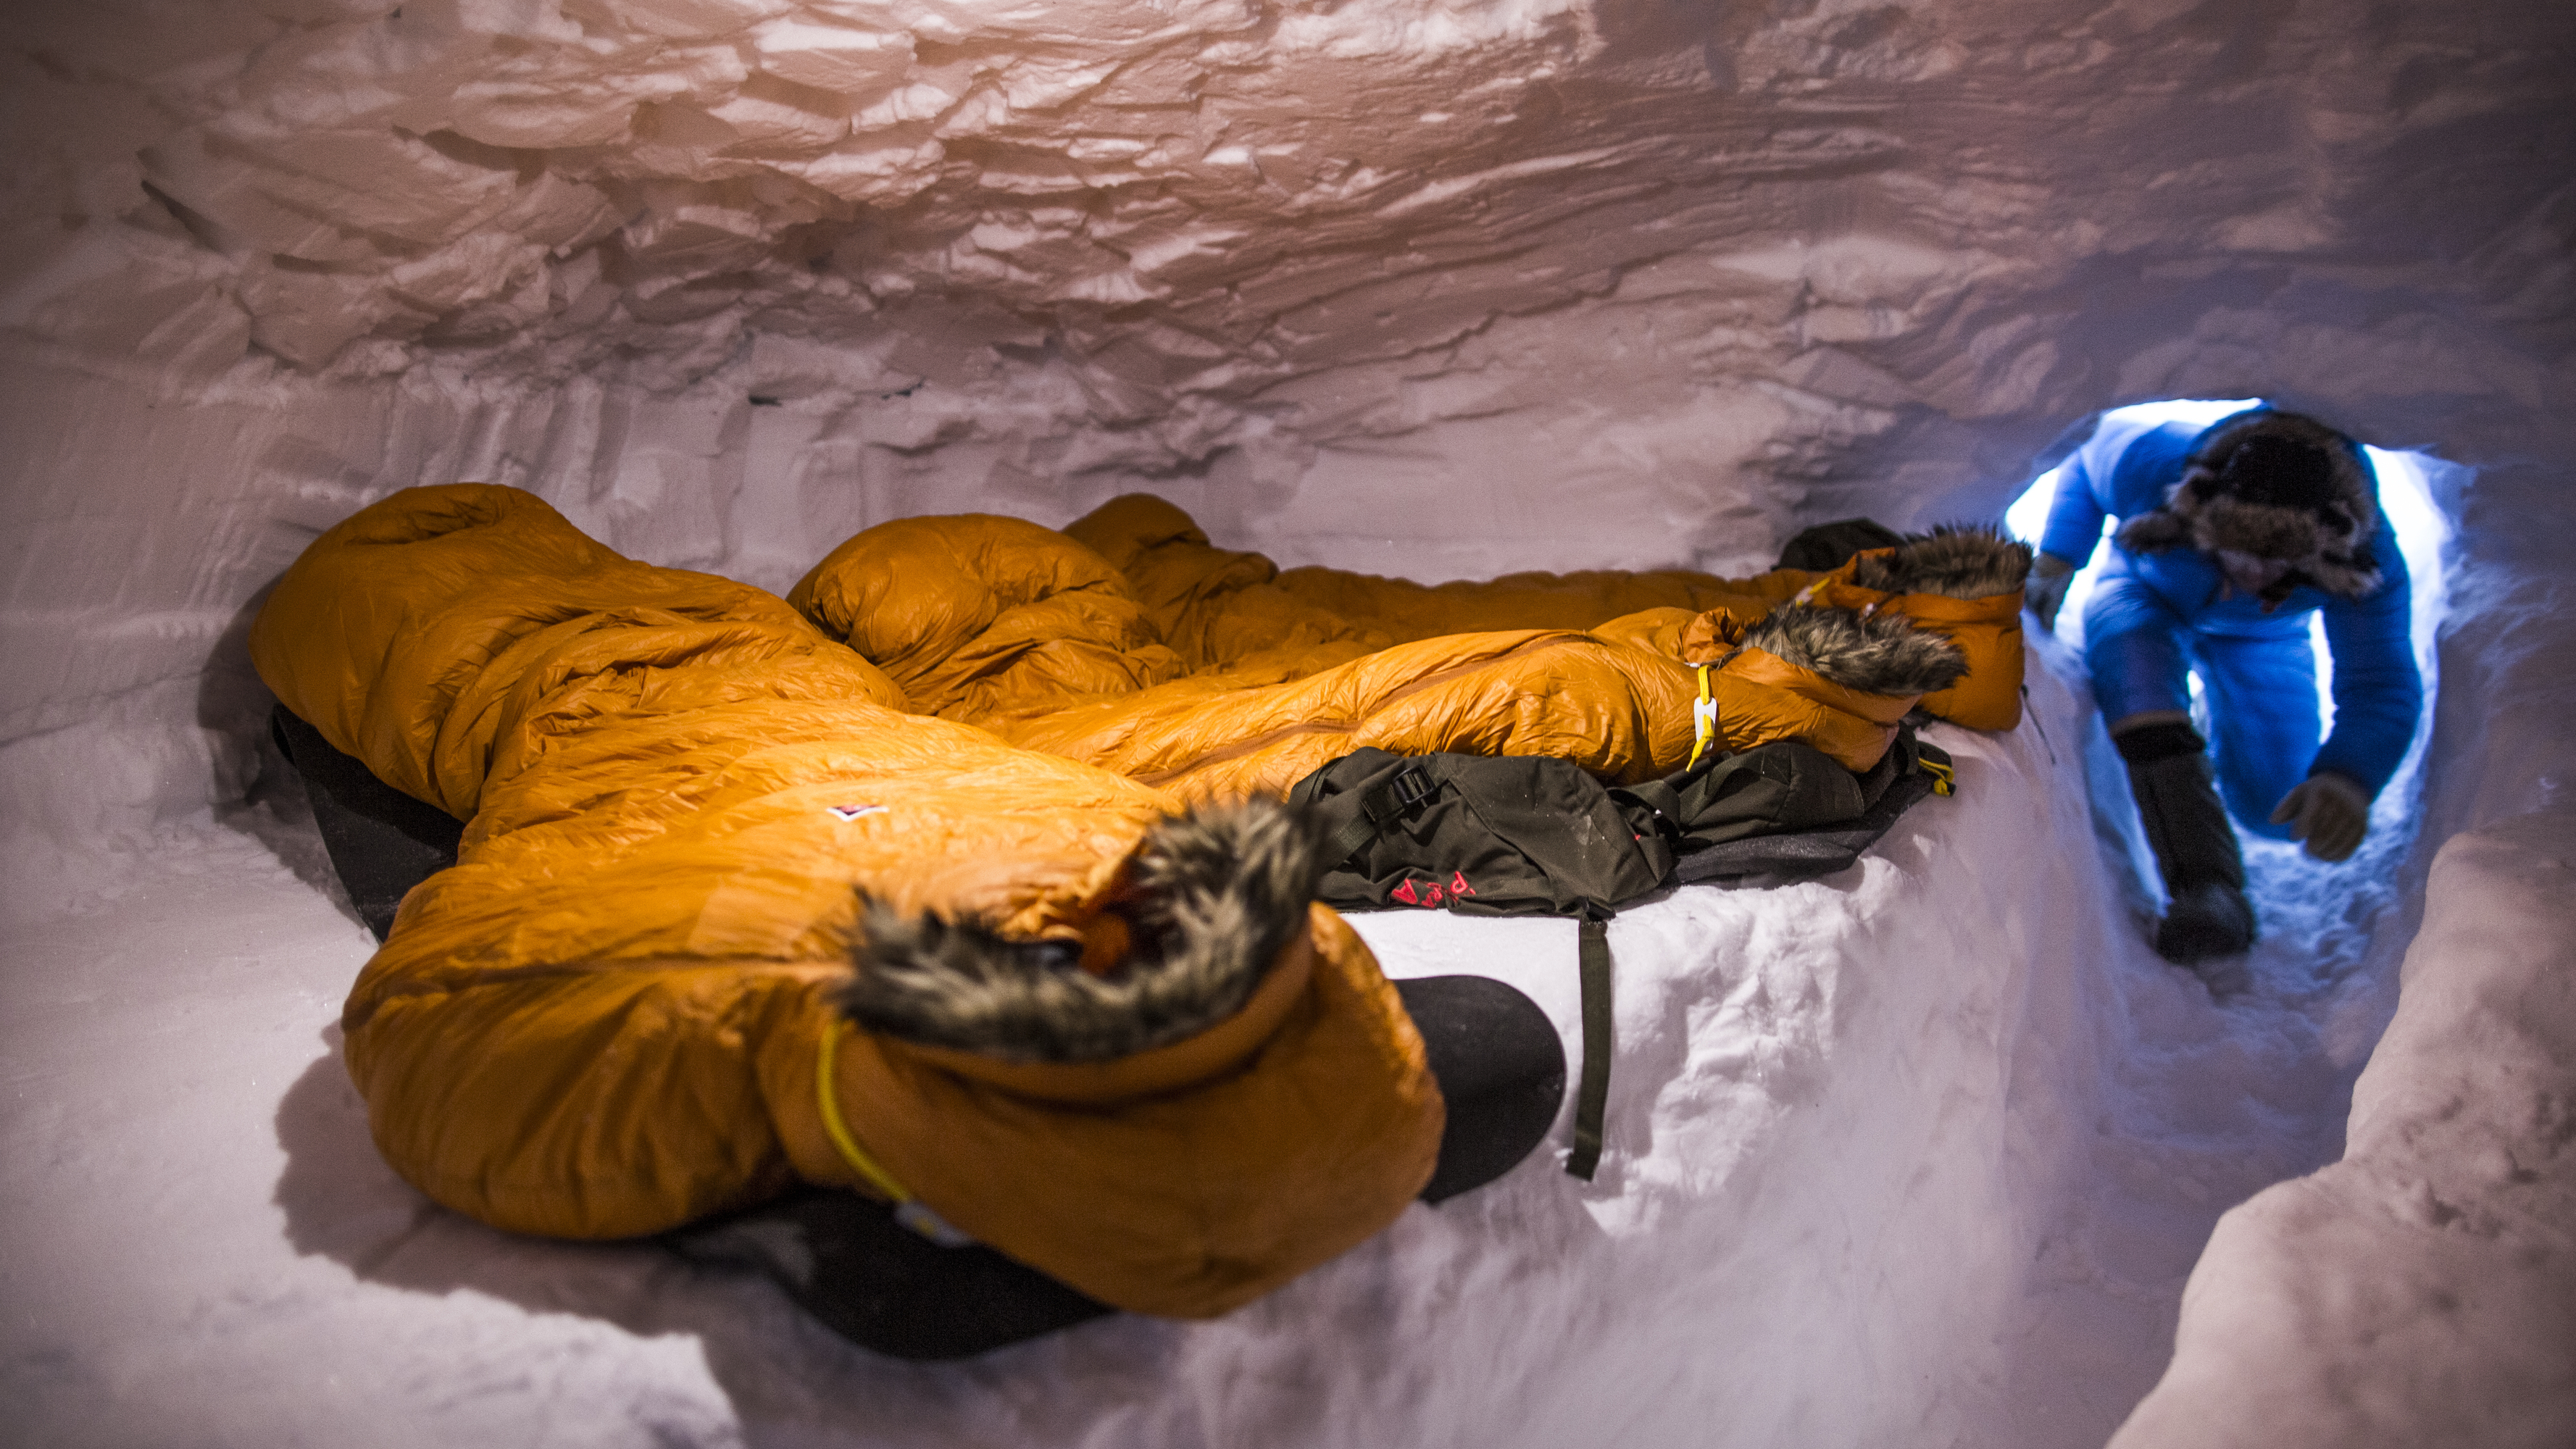 او نو Polar -30 Regular Sleeping Bag - Fjällräven او نو